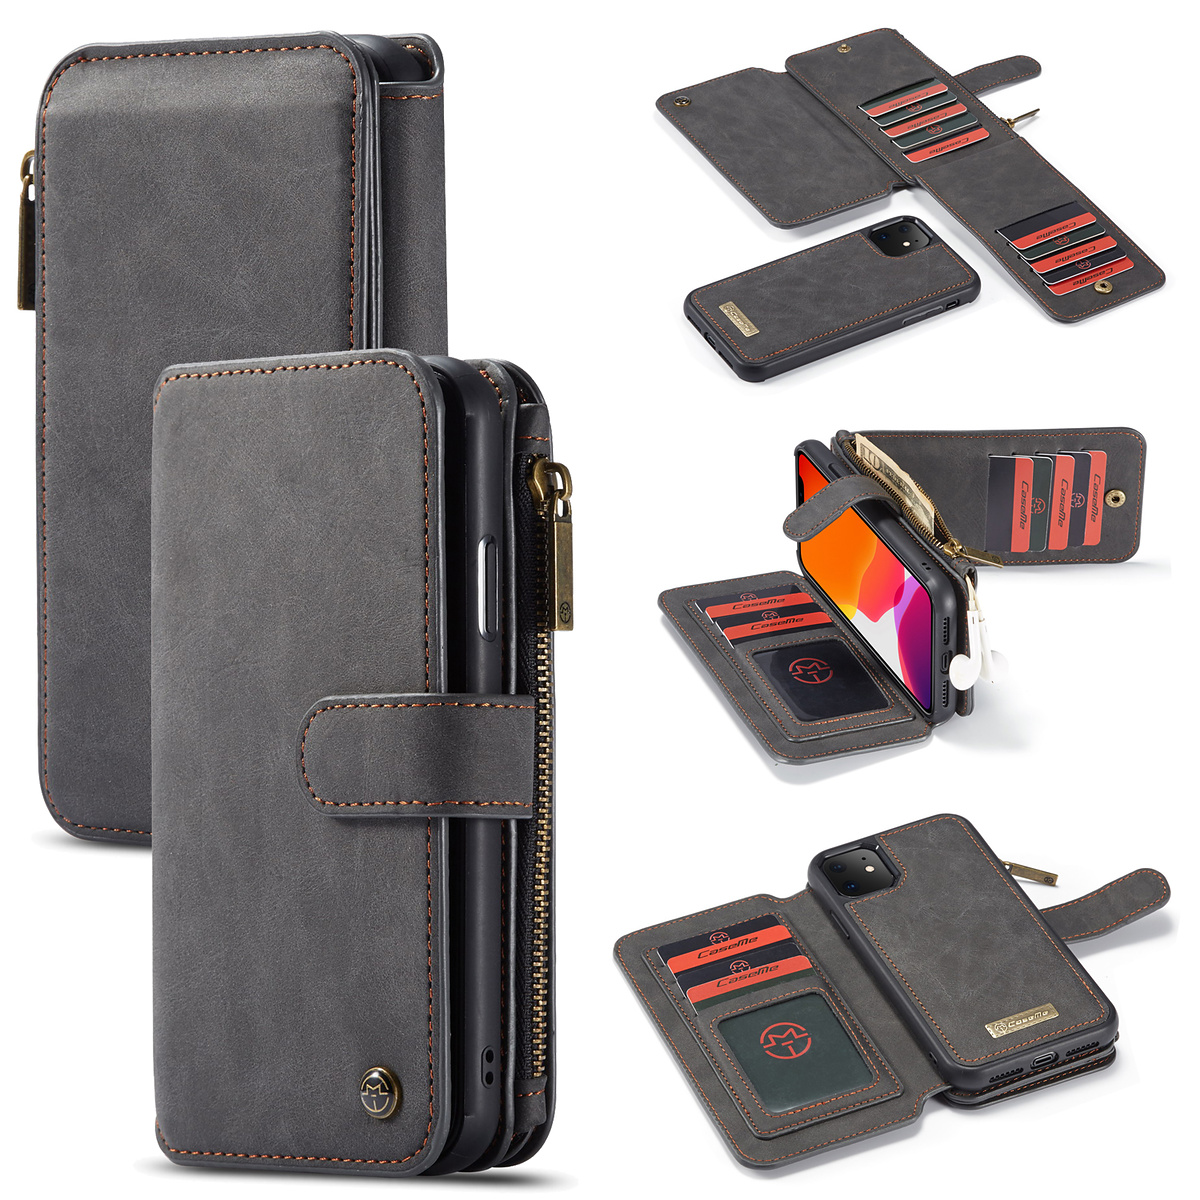 CaseMe plånboksfodral med magnetskal till iPhone 11, svart